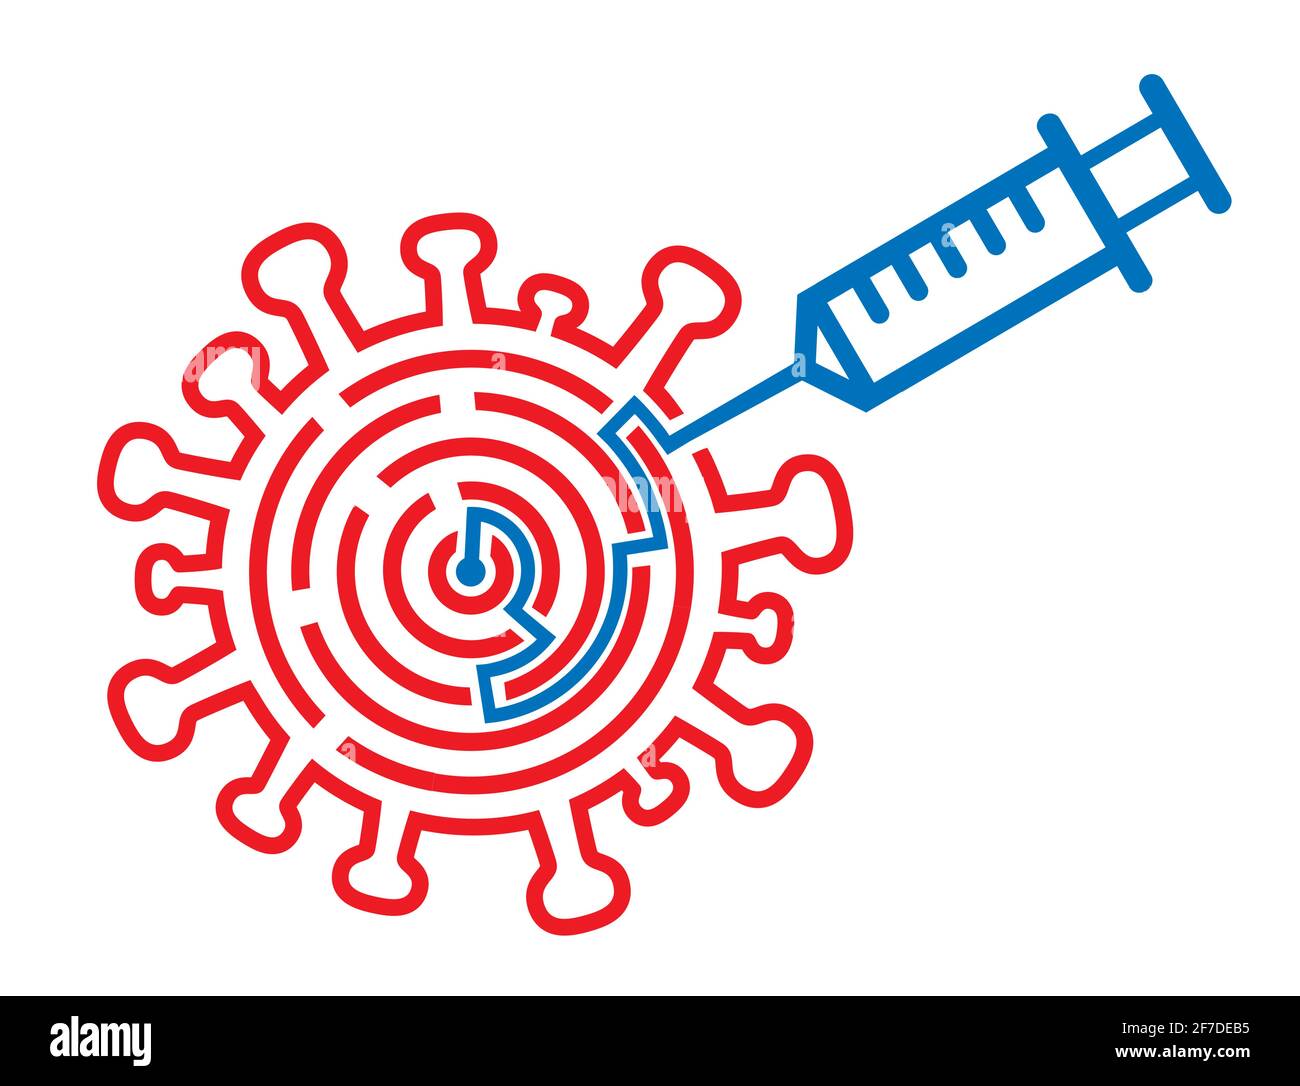 Iniezione del vaccino del coronavirus, vaccinazione. Simbolo del coronavirus con labirinto e iniezione simboleggiando il successo nel trattamento del covid-19. Illustrazione Vettoriale